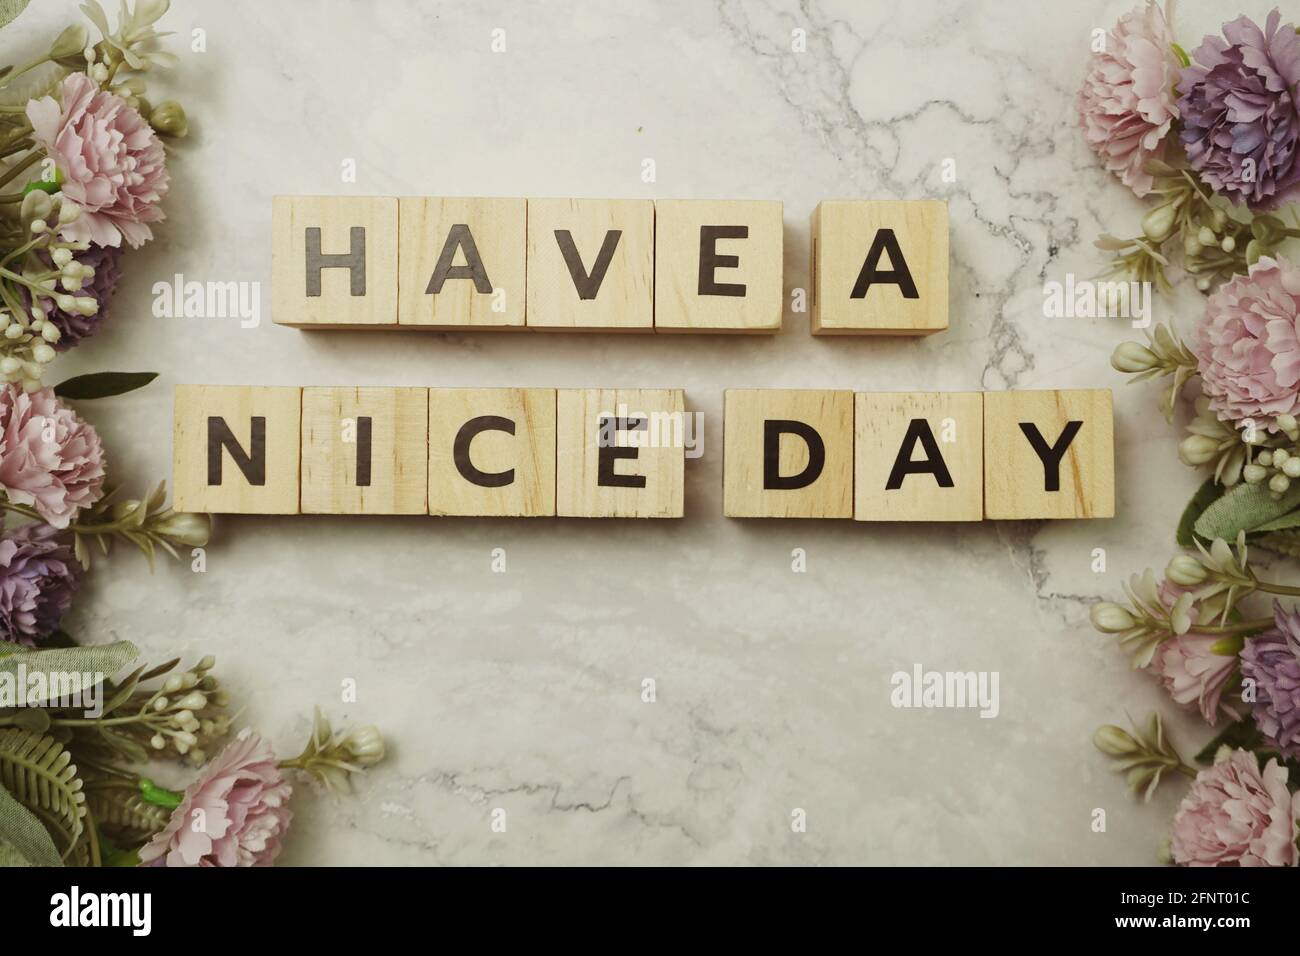 Haben Sie eine Briefnachricht zum "Nice Day" auf Marmorhintergrund Stockfoto